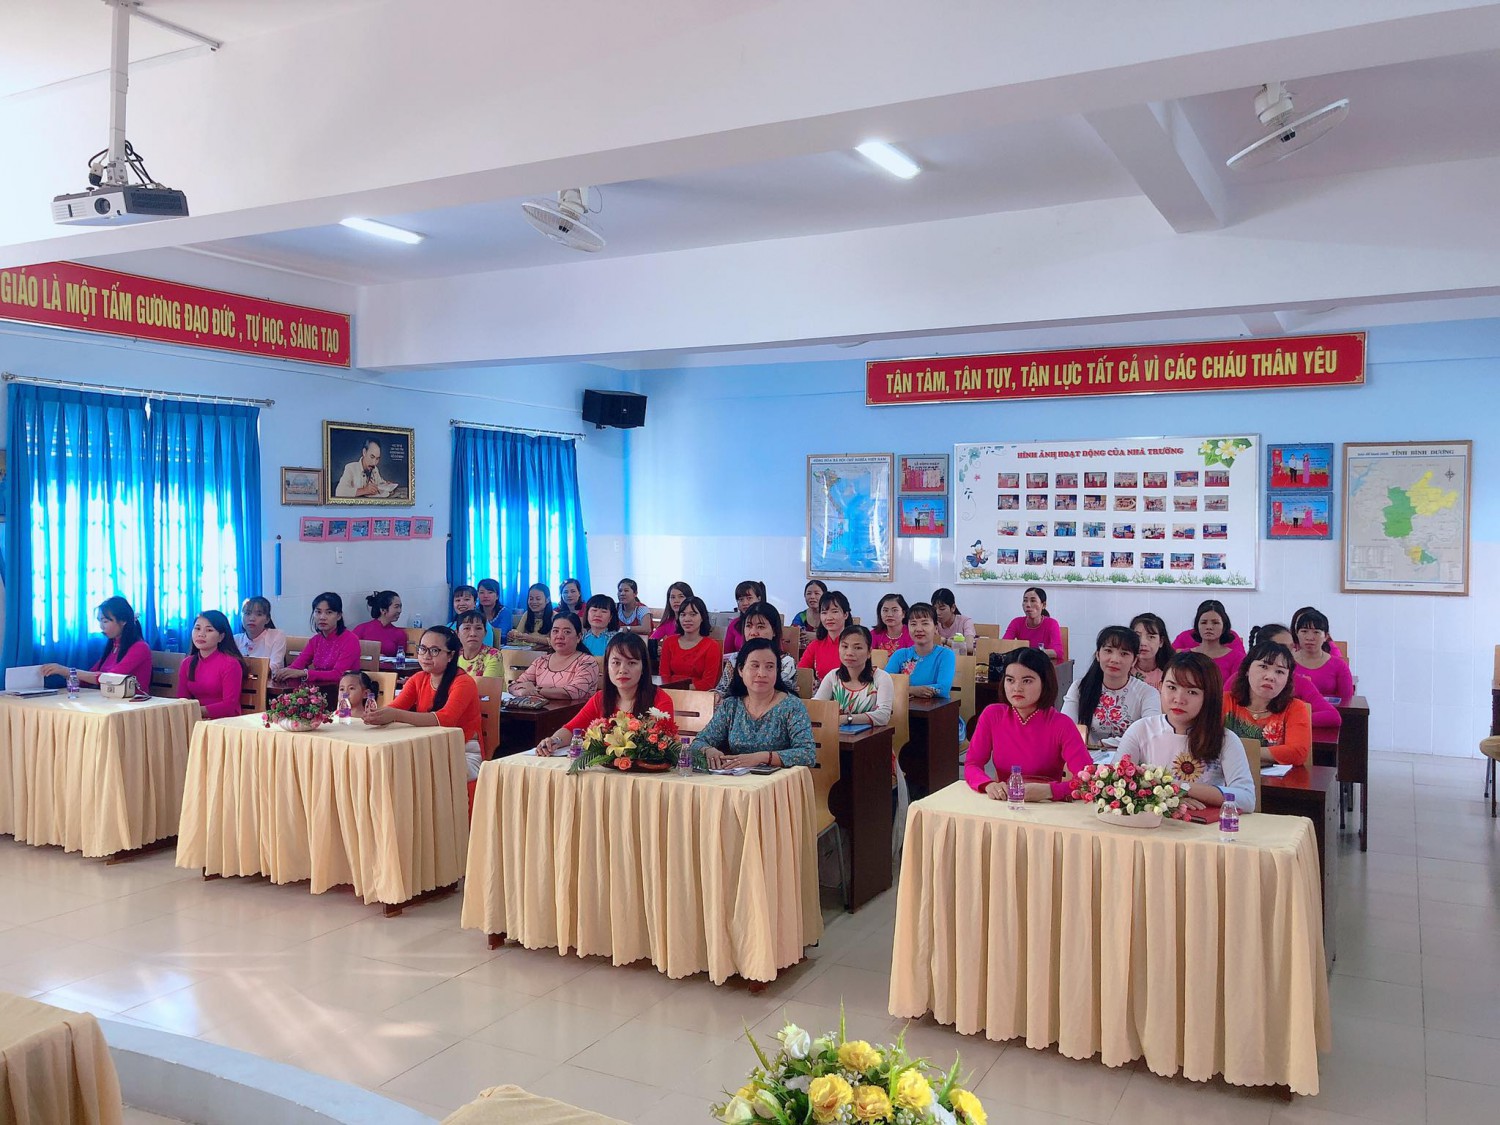 Trường Mầm non An Điền tổ chức Hội nghị cán bộ viên chức năm học 2020 – 2021.